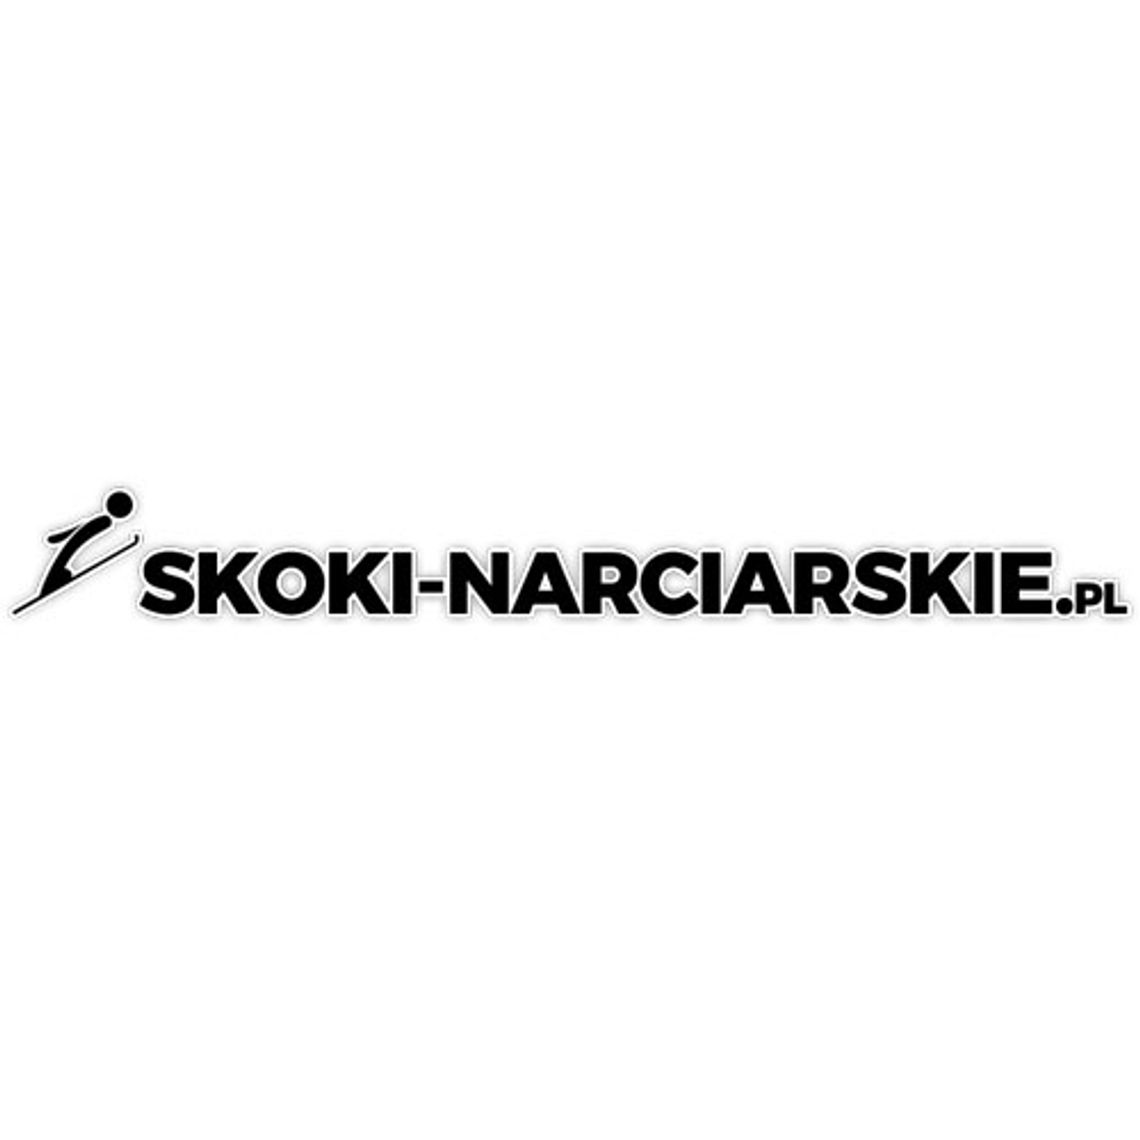 PŚ w skokach narciarskich - Skoki-narciarskie.pl